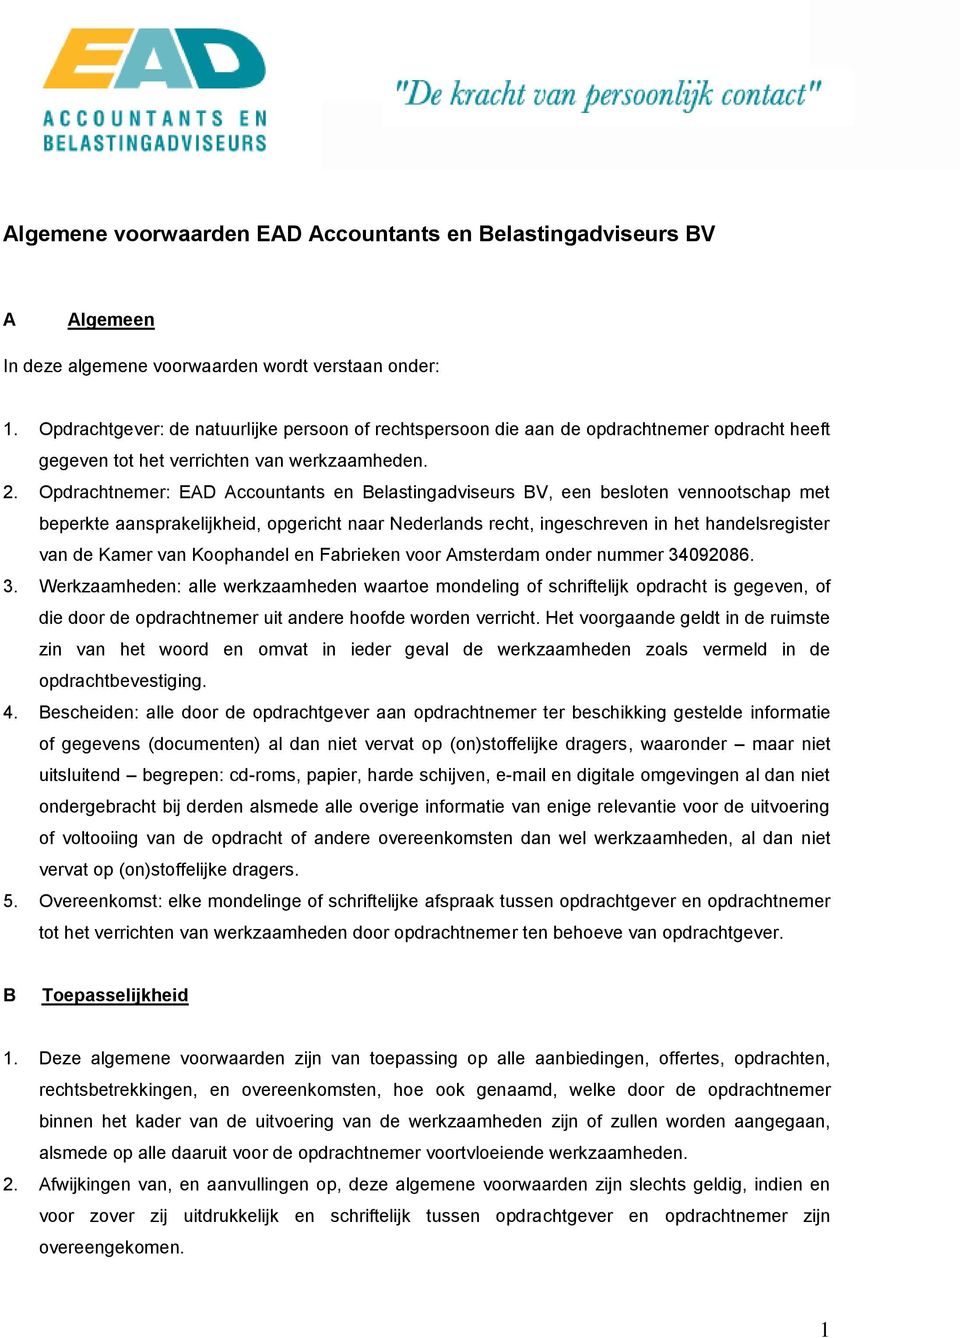 Opdrachtnemer: EAD Accountants en Belastingadviseurs BV, een besloten vennootschap met beperkte aansprakelijkheid, opgericht naar Nederlands recht, ingeschreven in het handelsregister van de Kamer